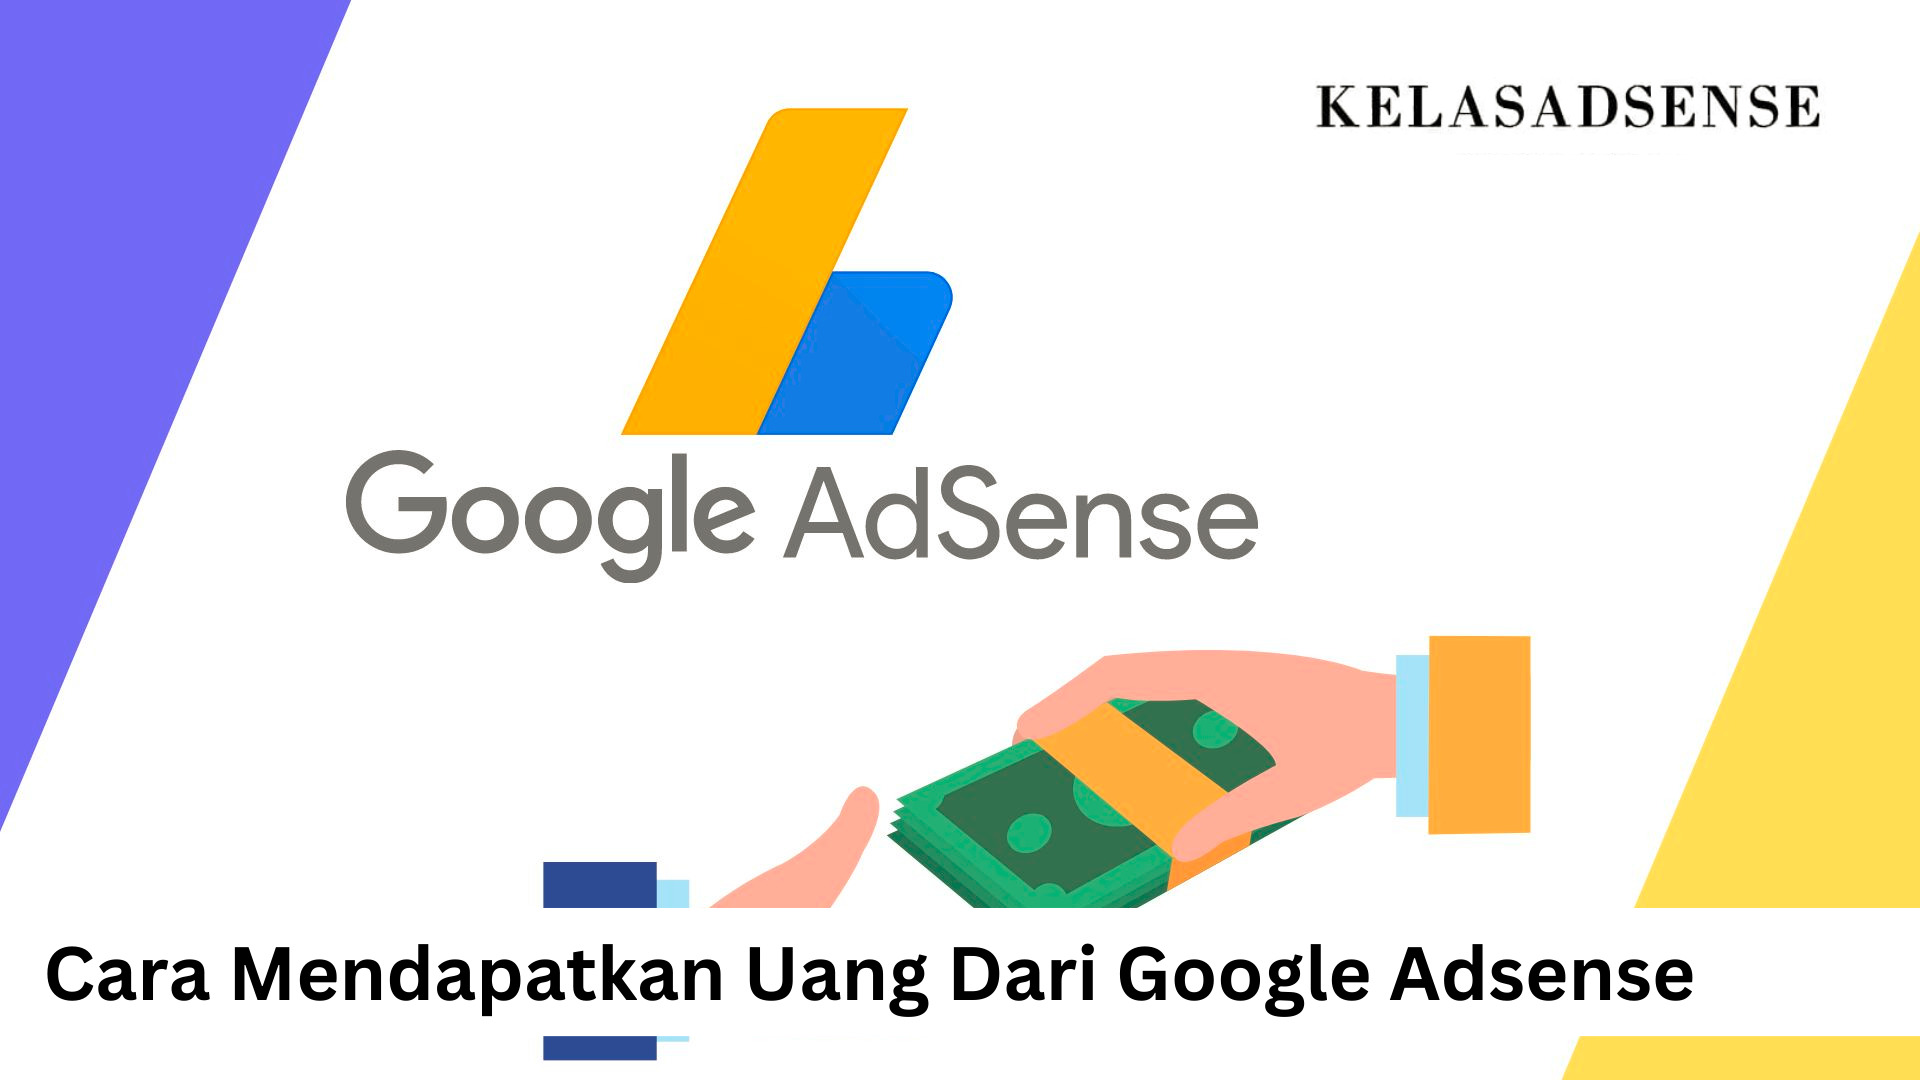 Cara Mendapatkan Uang Dari Google Adsense